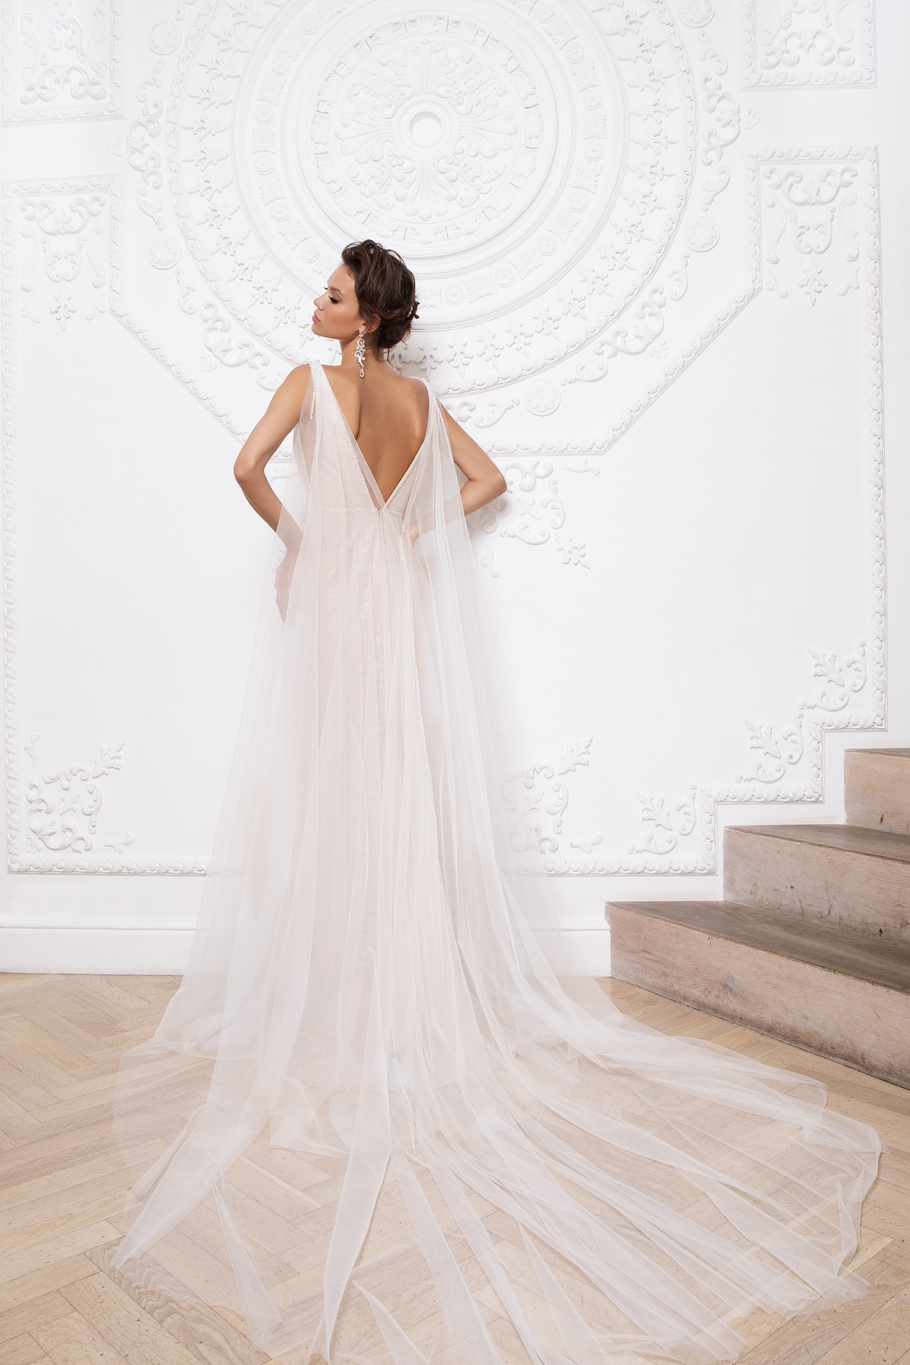 Купить свадебное платье «Прадин» Мэрри Марк из коллекции 2020 года в Ярославле